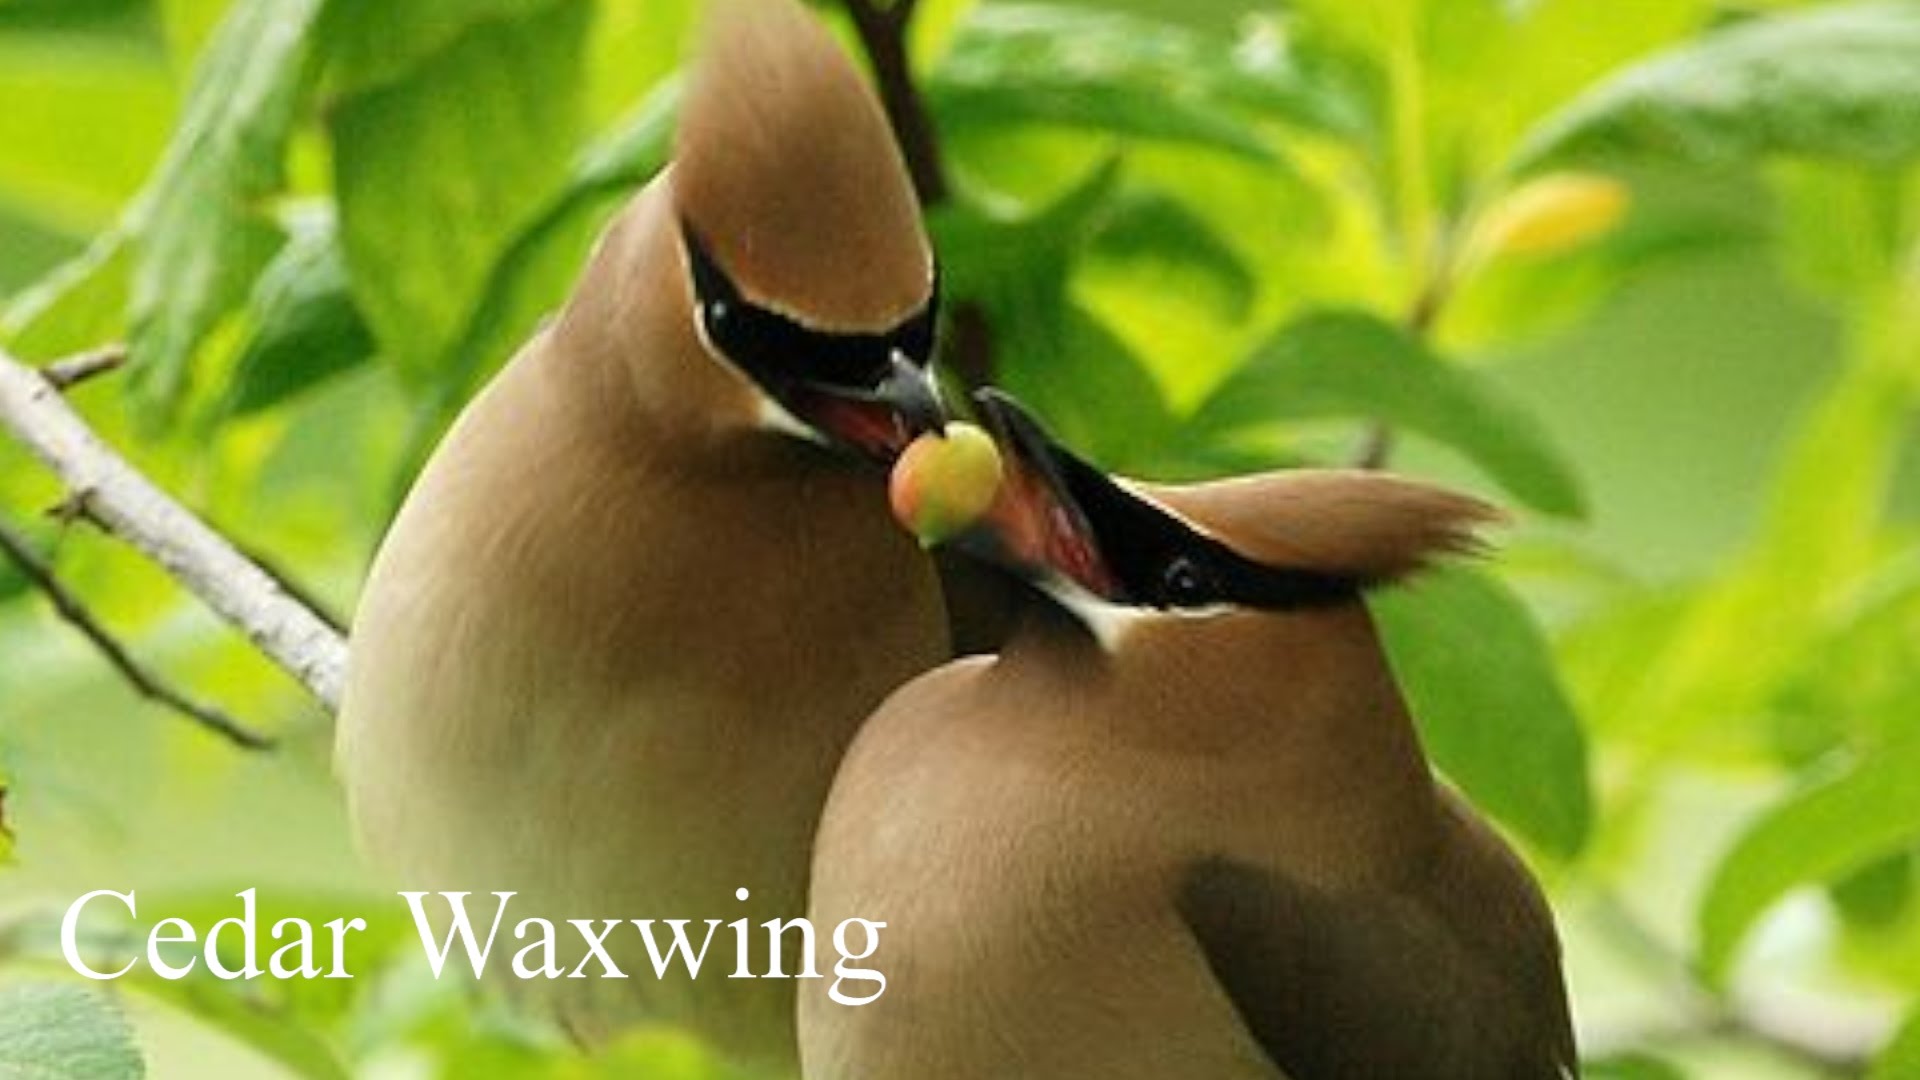 Cedar waxwing photo